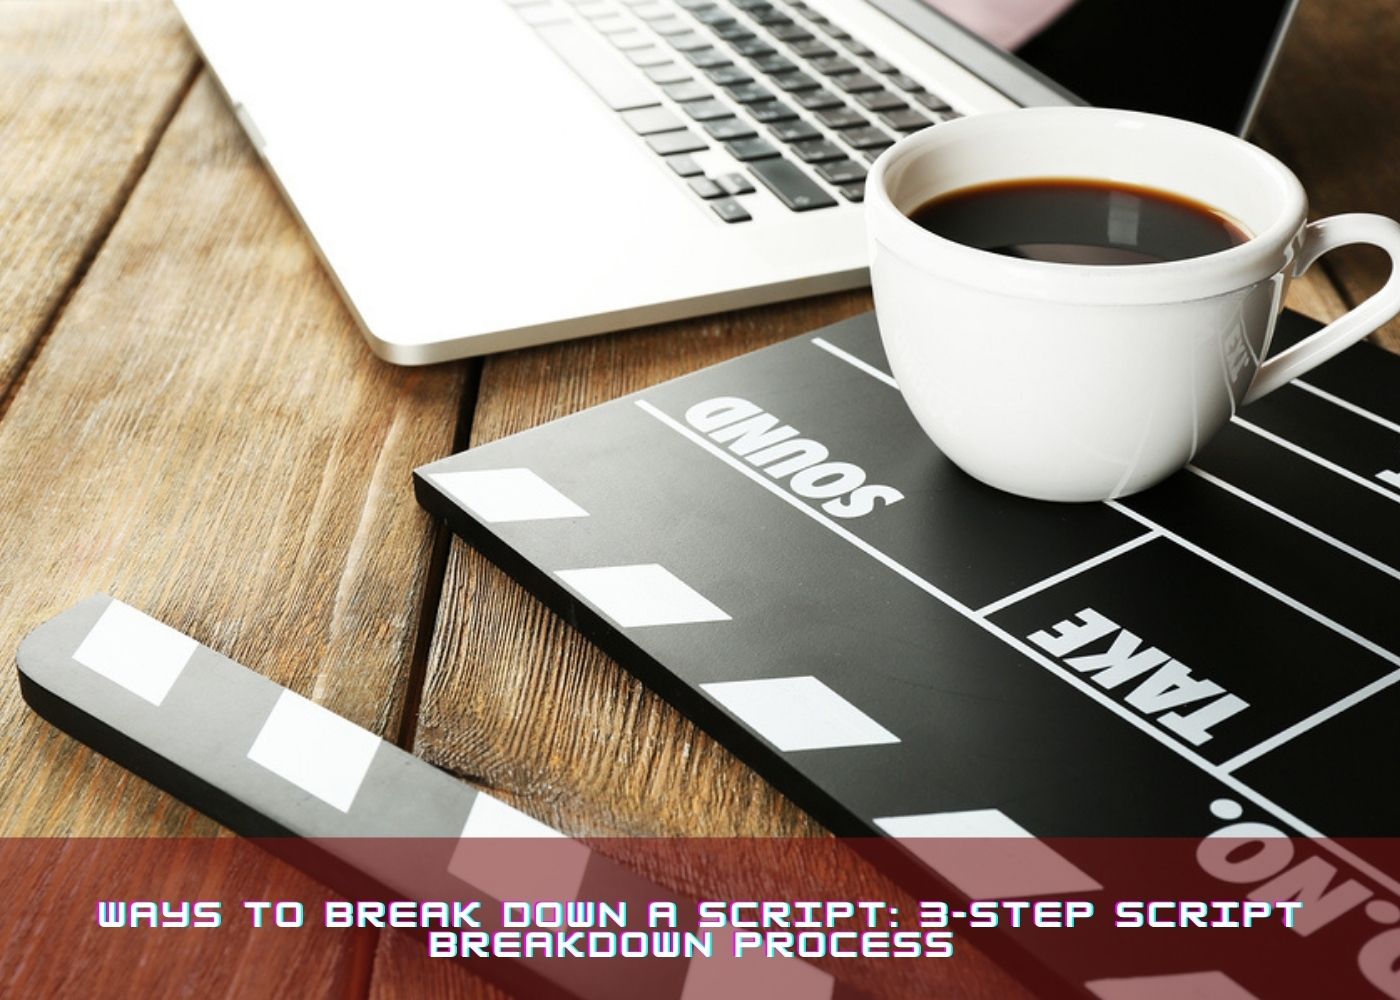 Ways to Break Down a Script: 3-Step Script Breakdown Process 